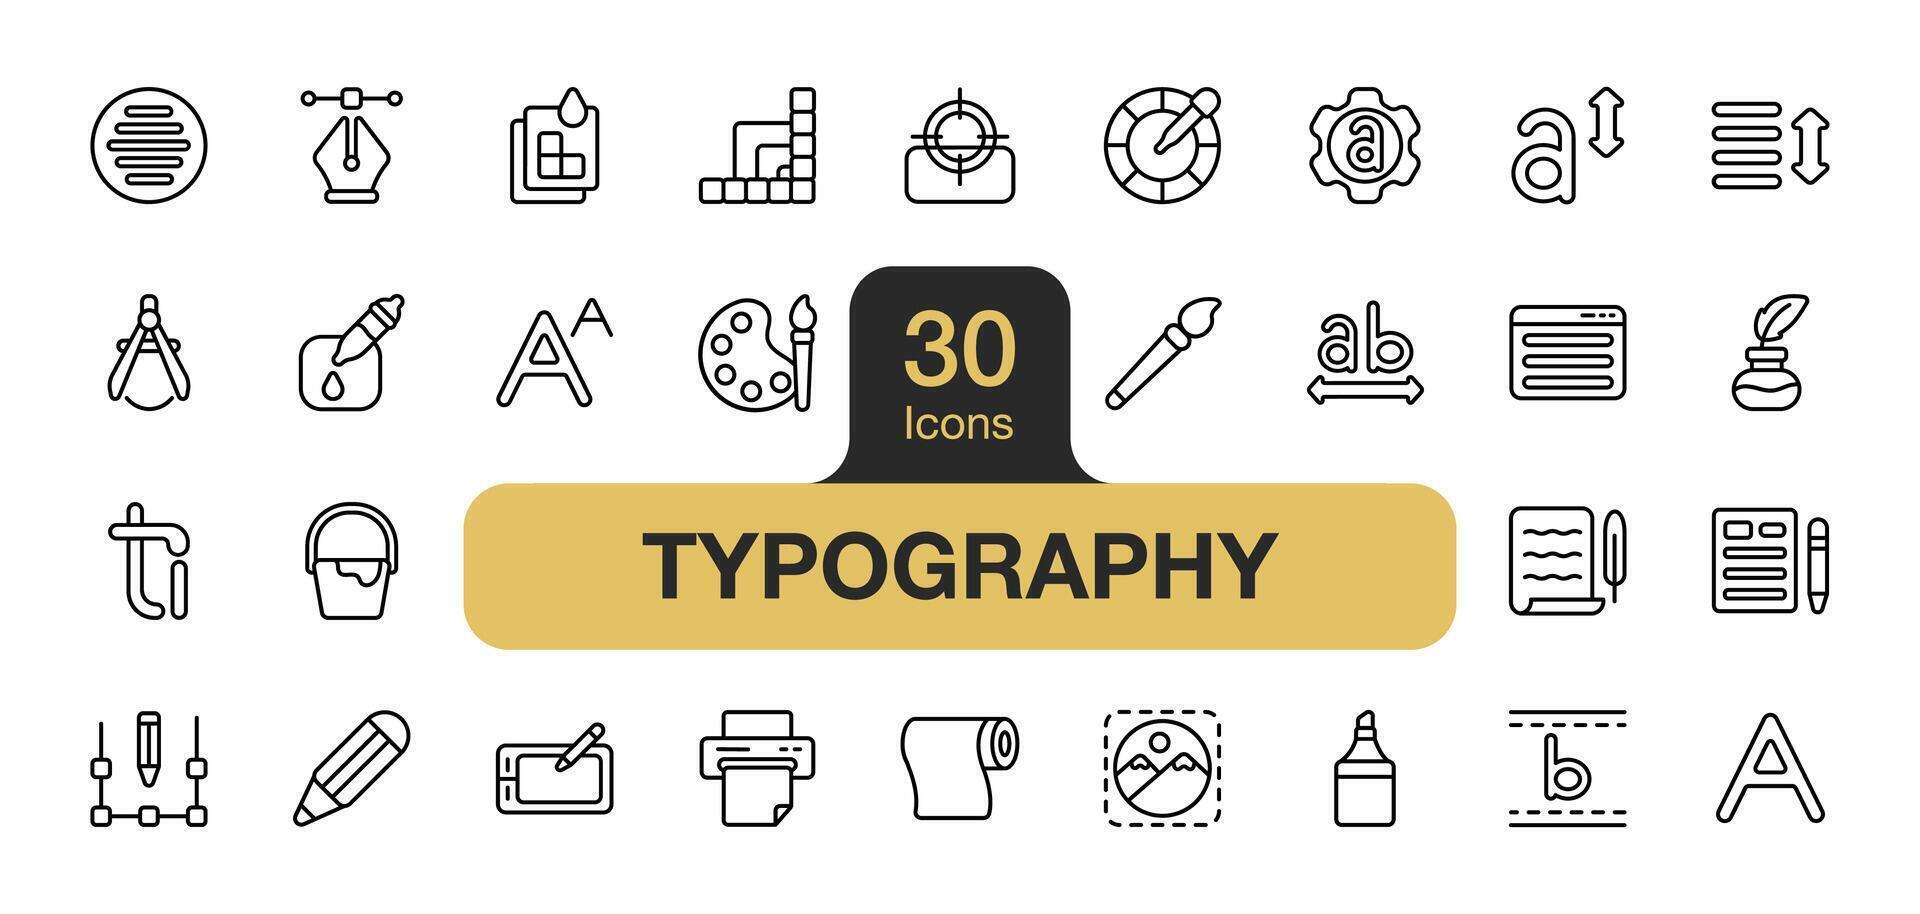 ensemble de 30 typographie icône élément ensemble. comprend peindre, encrer, stylo outil, Police de caractère, texte, ligature, et plus. contour Icônes vecteur collection.